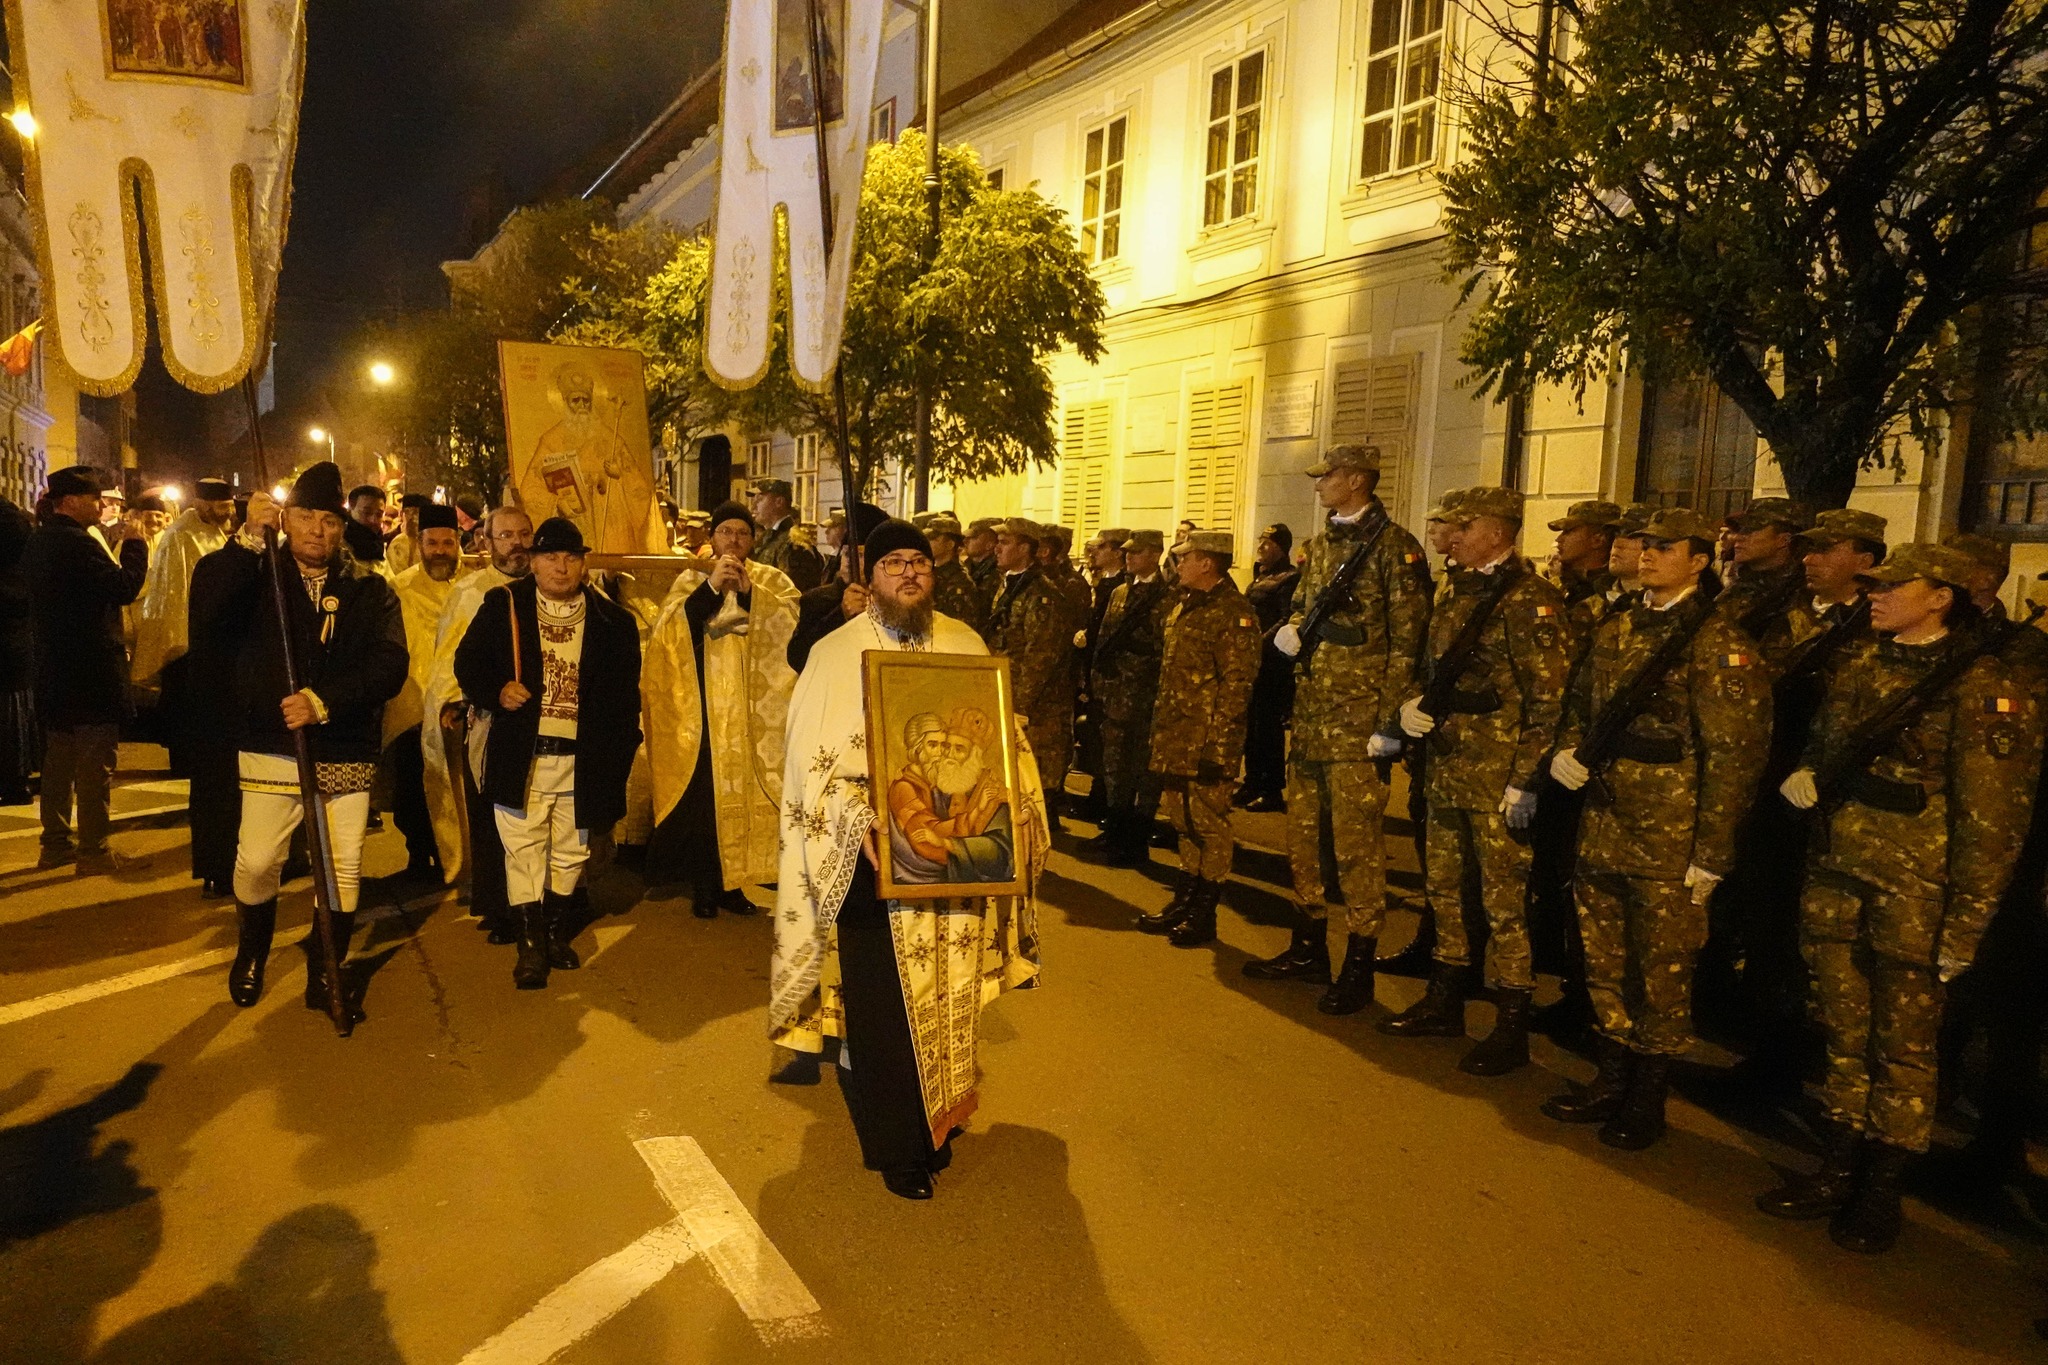 FOTO Procesiune solemnă în această seară pe străzile Sibiului, cu ocazia Sfântului Ierarh Andrei. Studenții AFT s-au alăturat preoților și credincioșilor